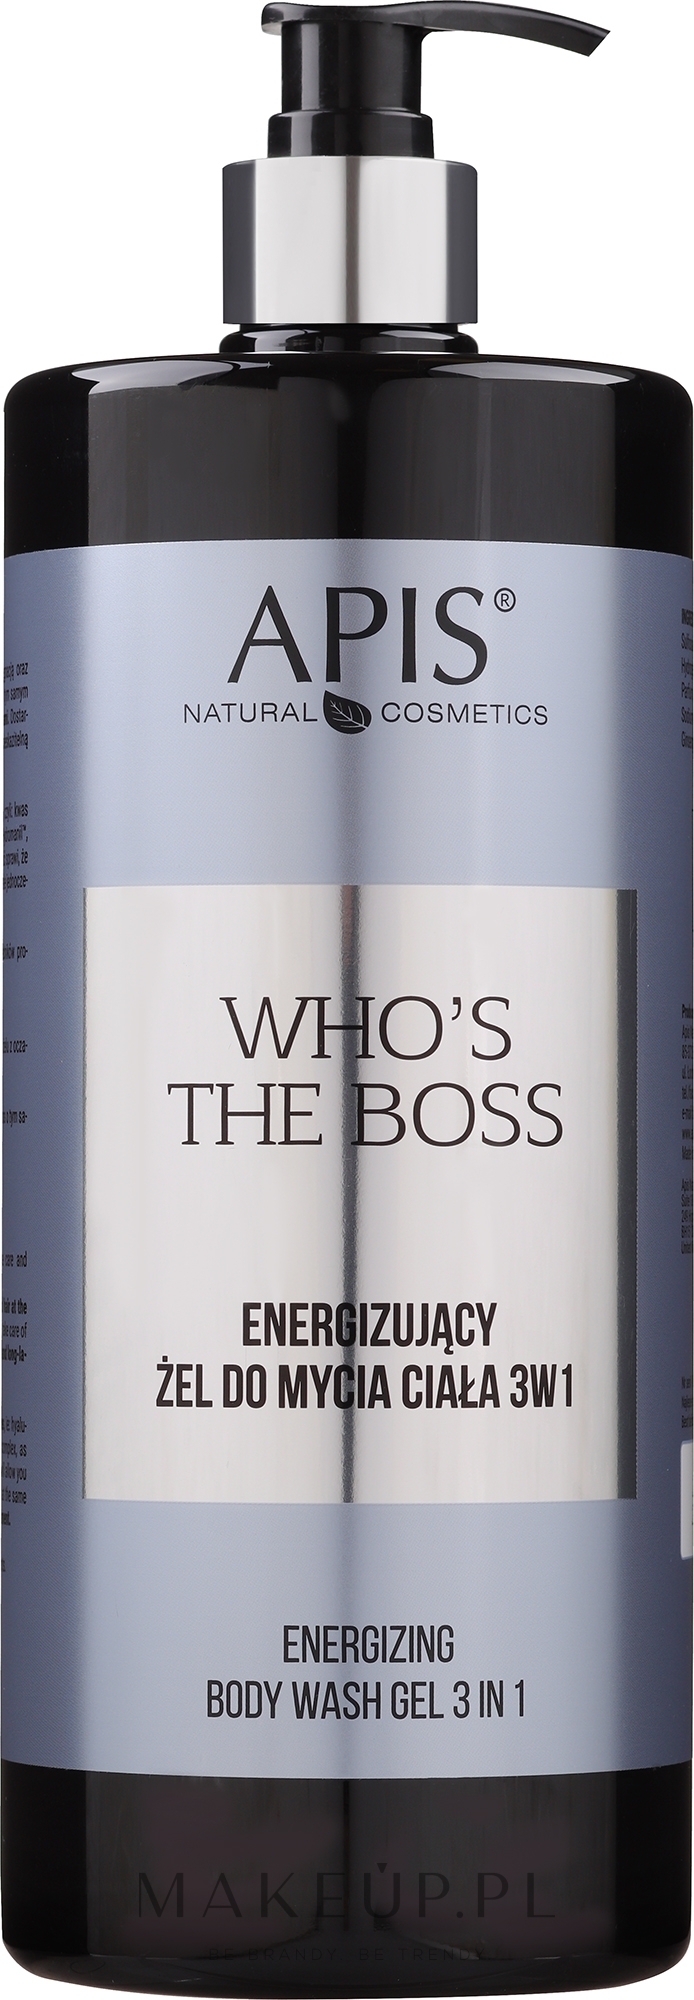 Energizujący żel do mycia ciała 3 w 1 - APIS Professional Who's The Boss Energizing Body Wash 3 In 1 — Zdjęcie 1000 ml